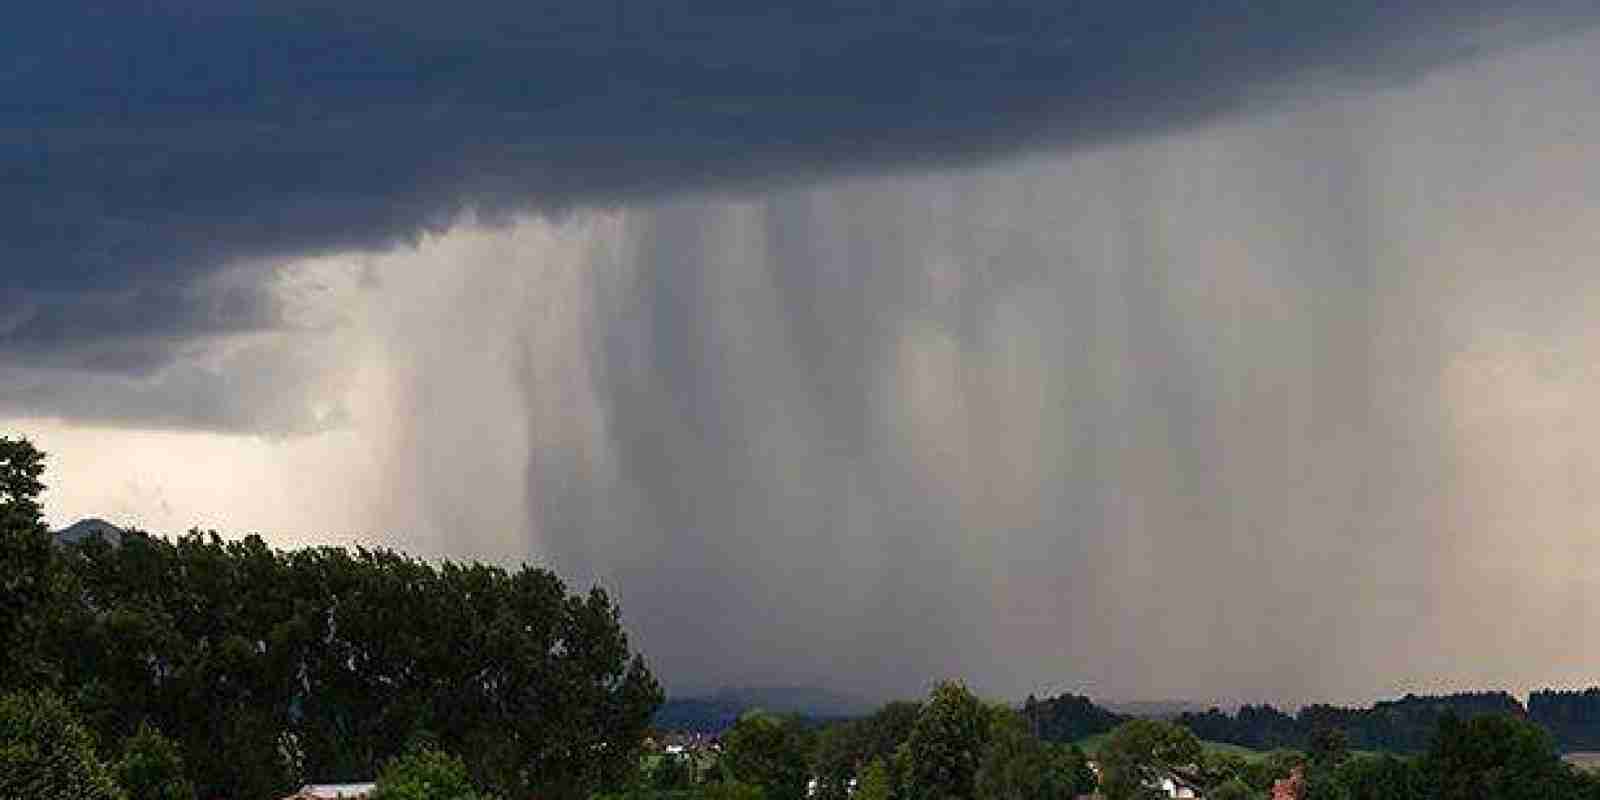 Сильні дощі, гроза, вітер: синоптики закликали зважати на прогноз погоди 26 липня у Львові й бути обачними